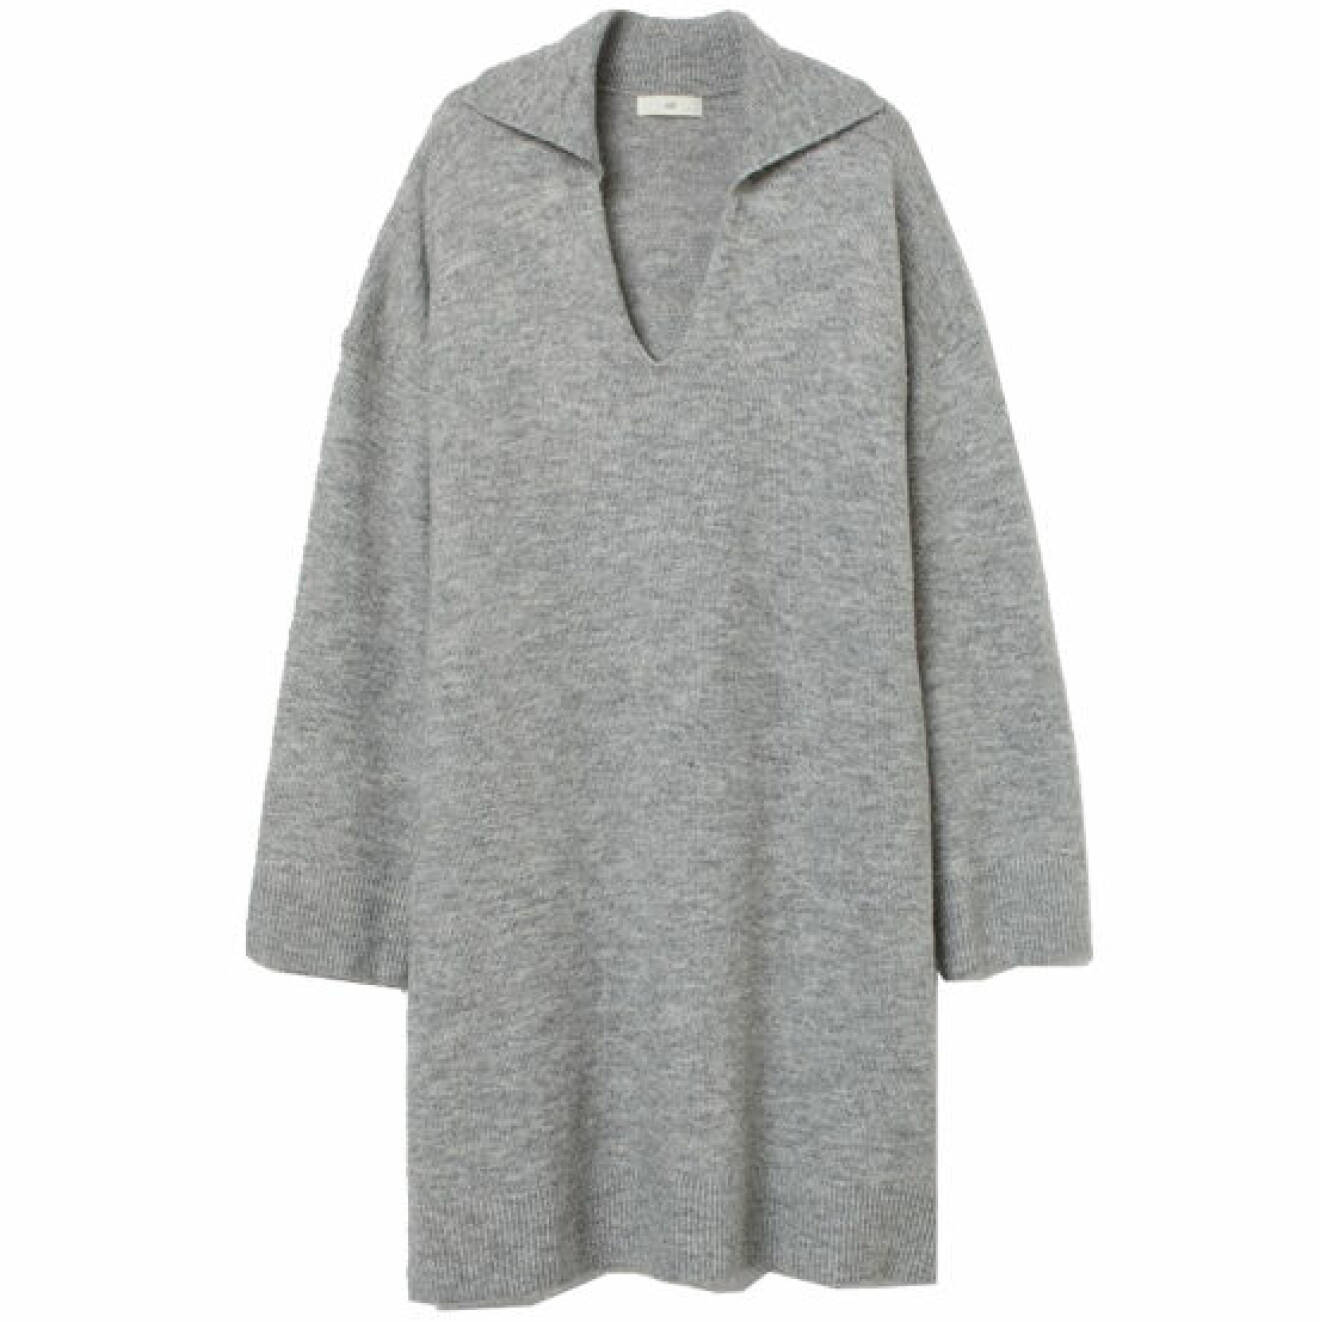 grå stickad klänning med krage för basgarderob höst och vinter 2021